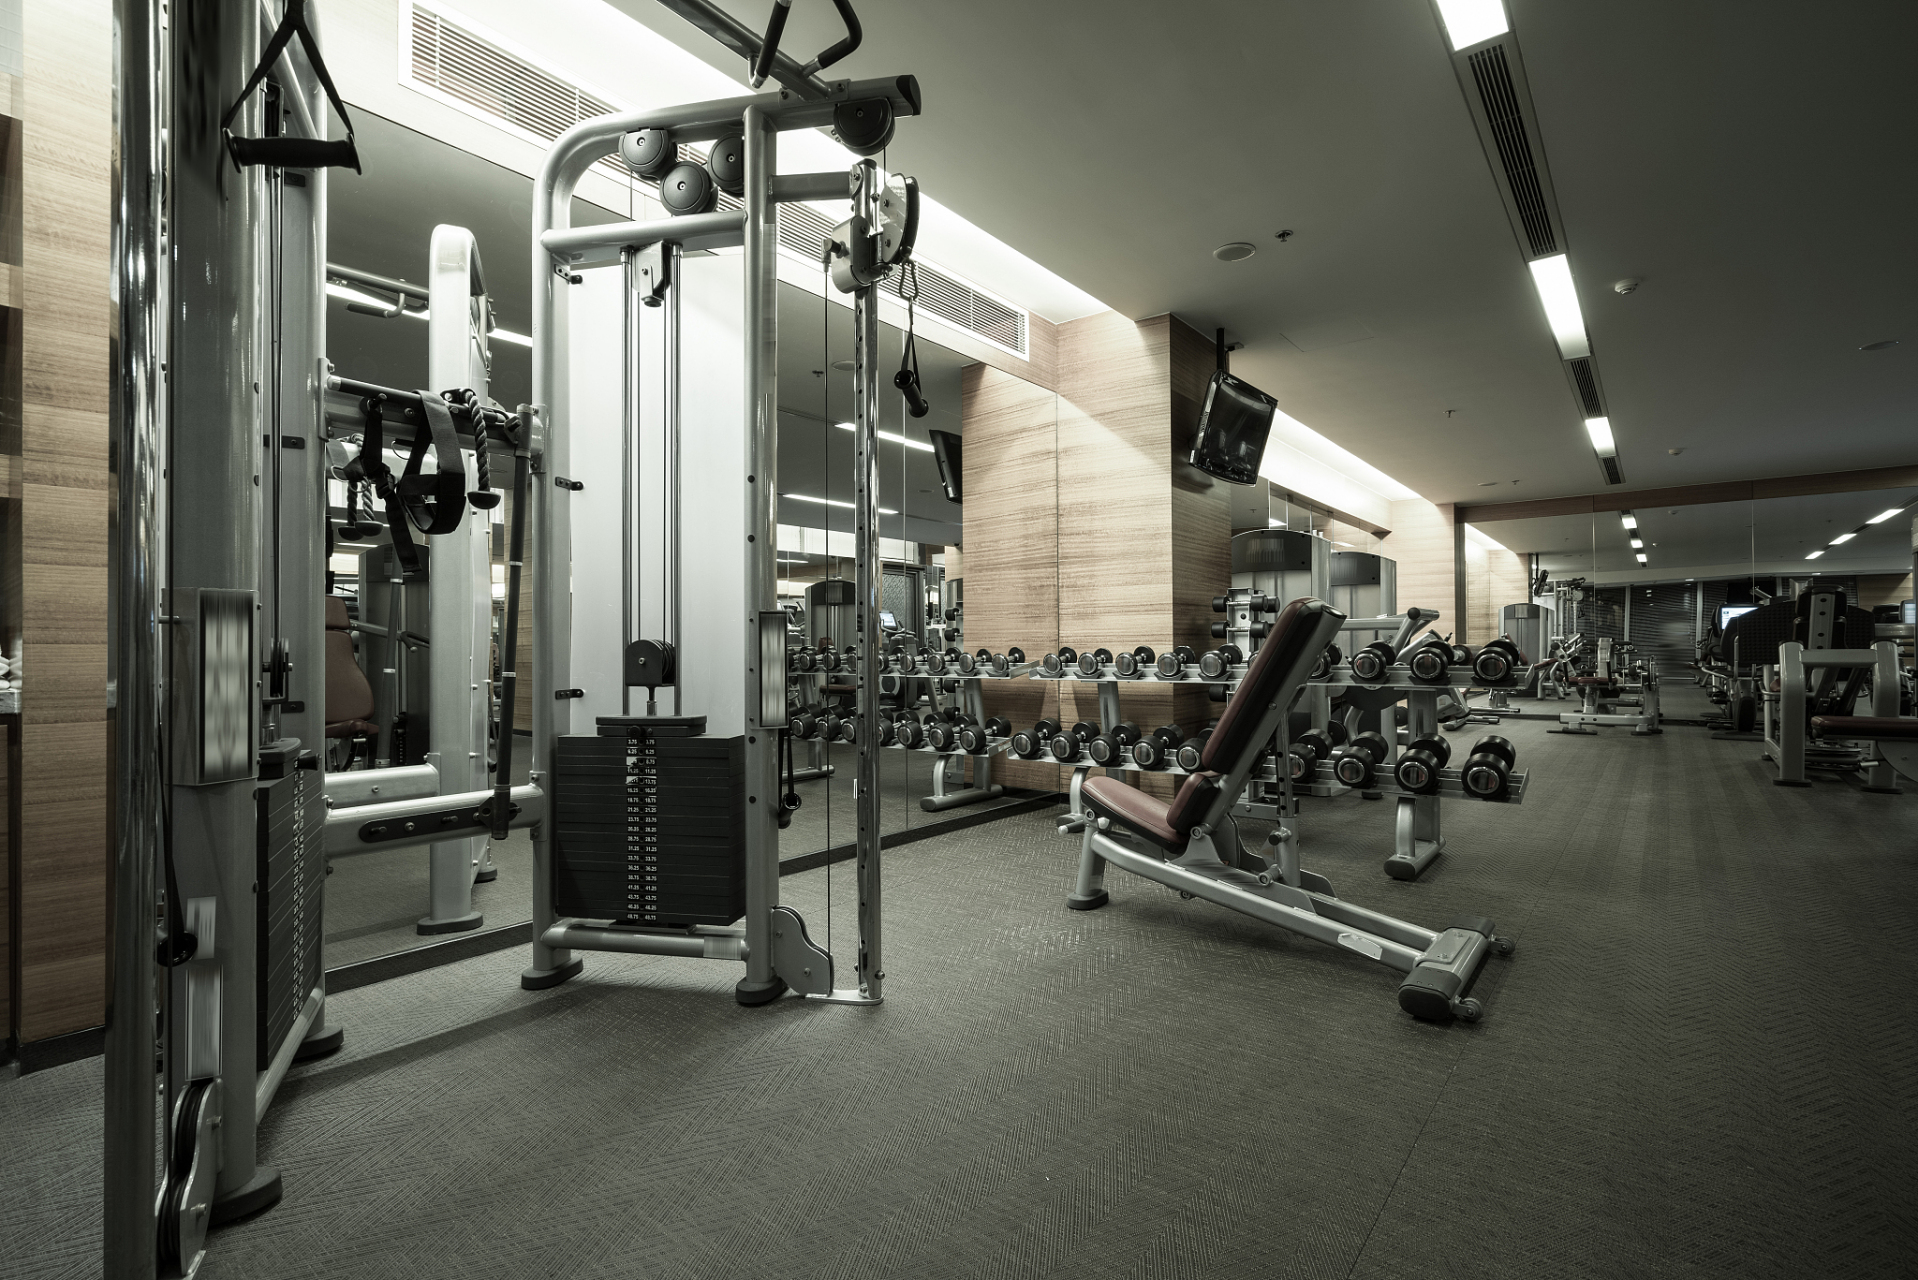 健身房一直是大家锻炼身体的好去处,但近日一则男子健身房内被杠铃